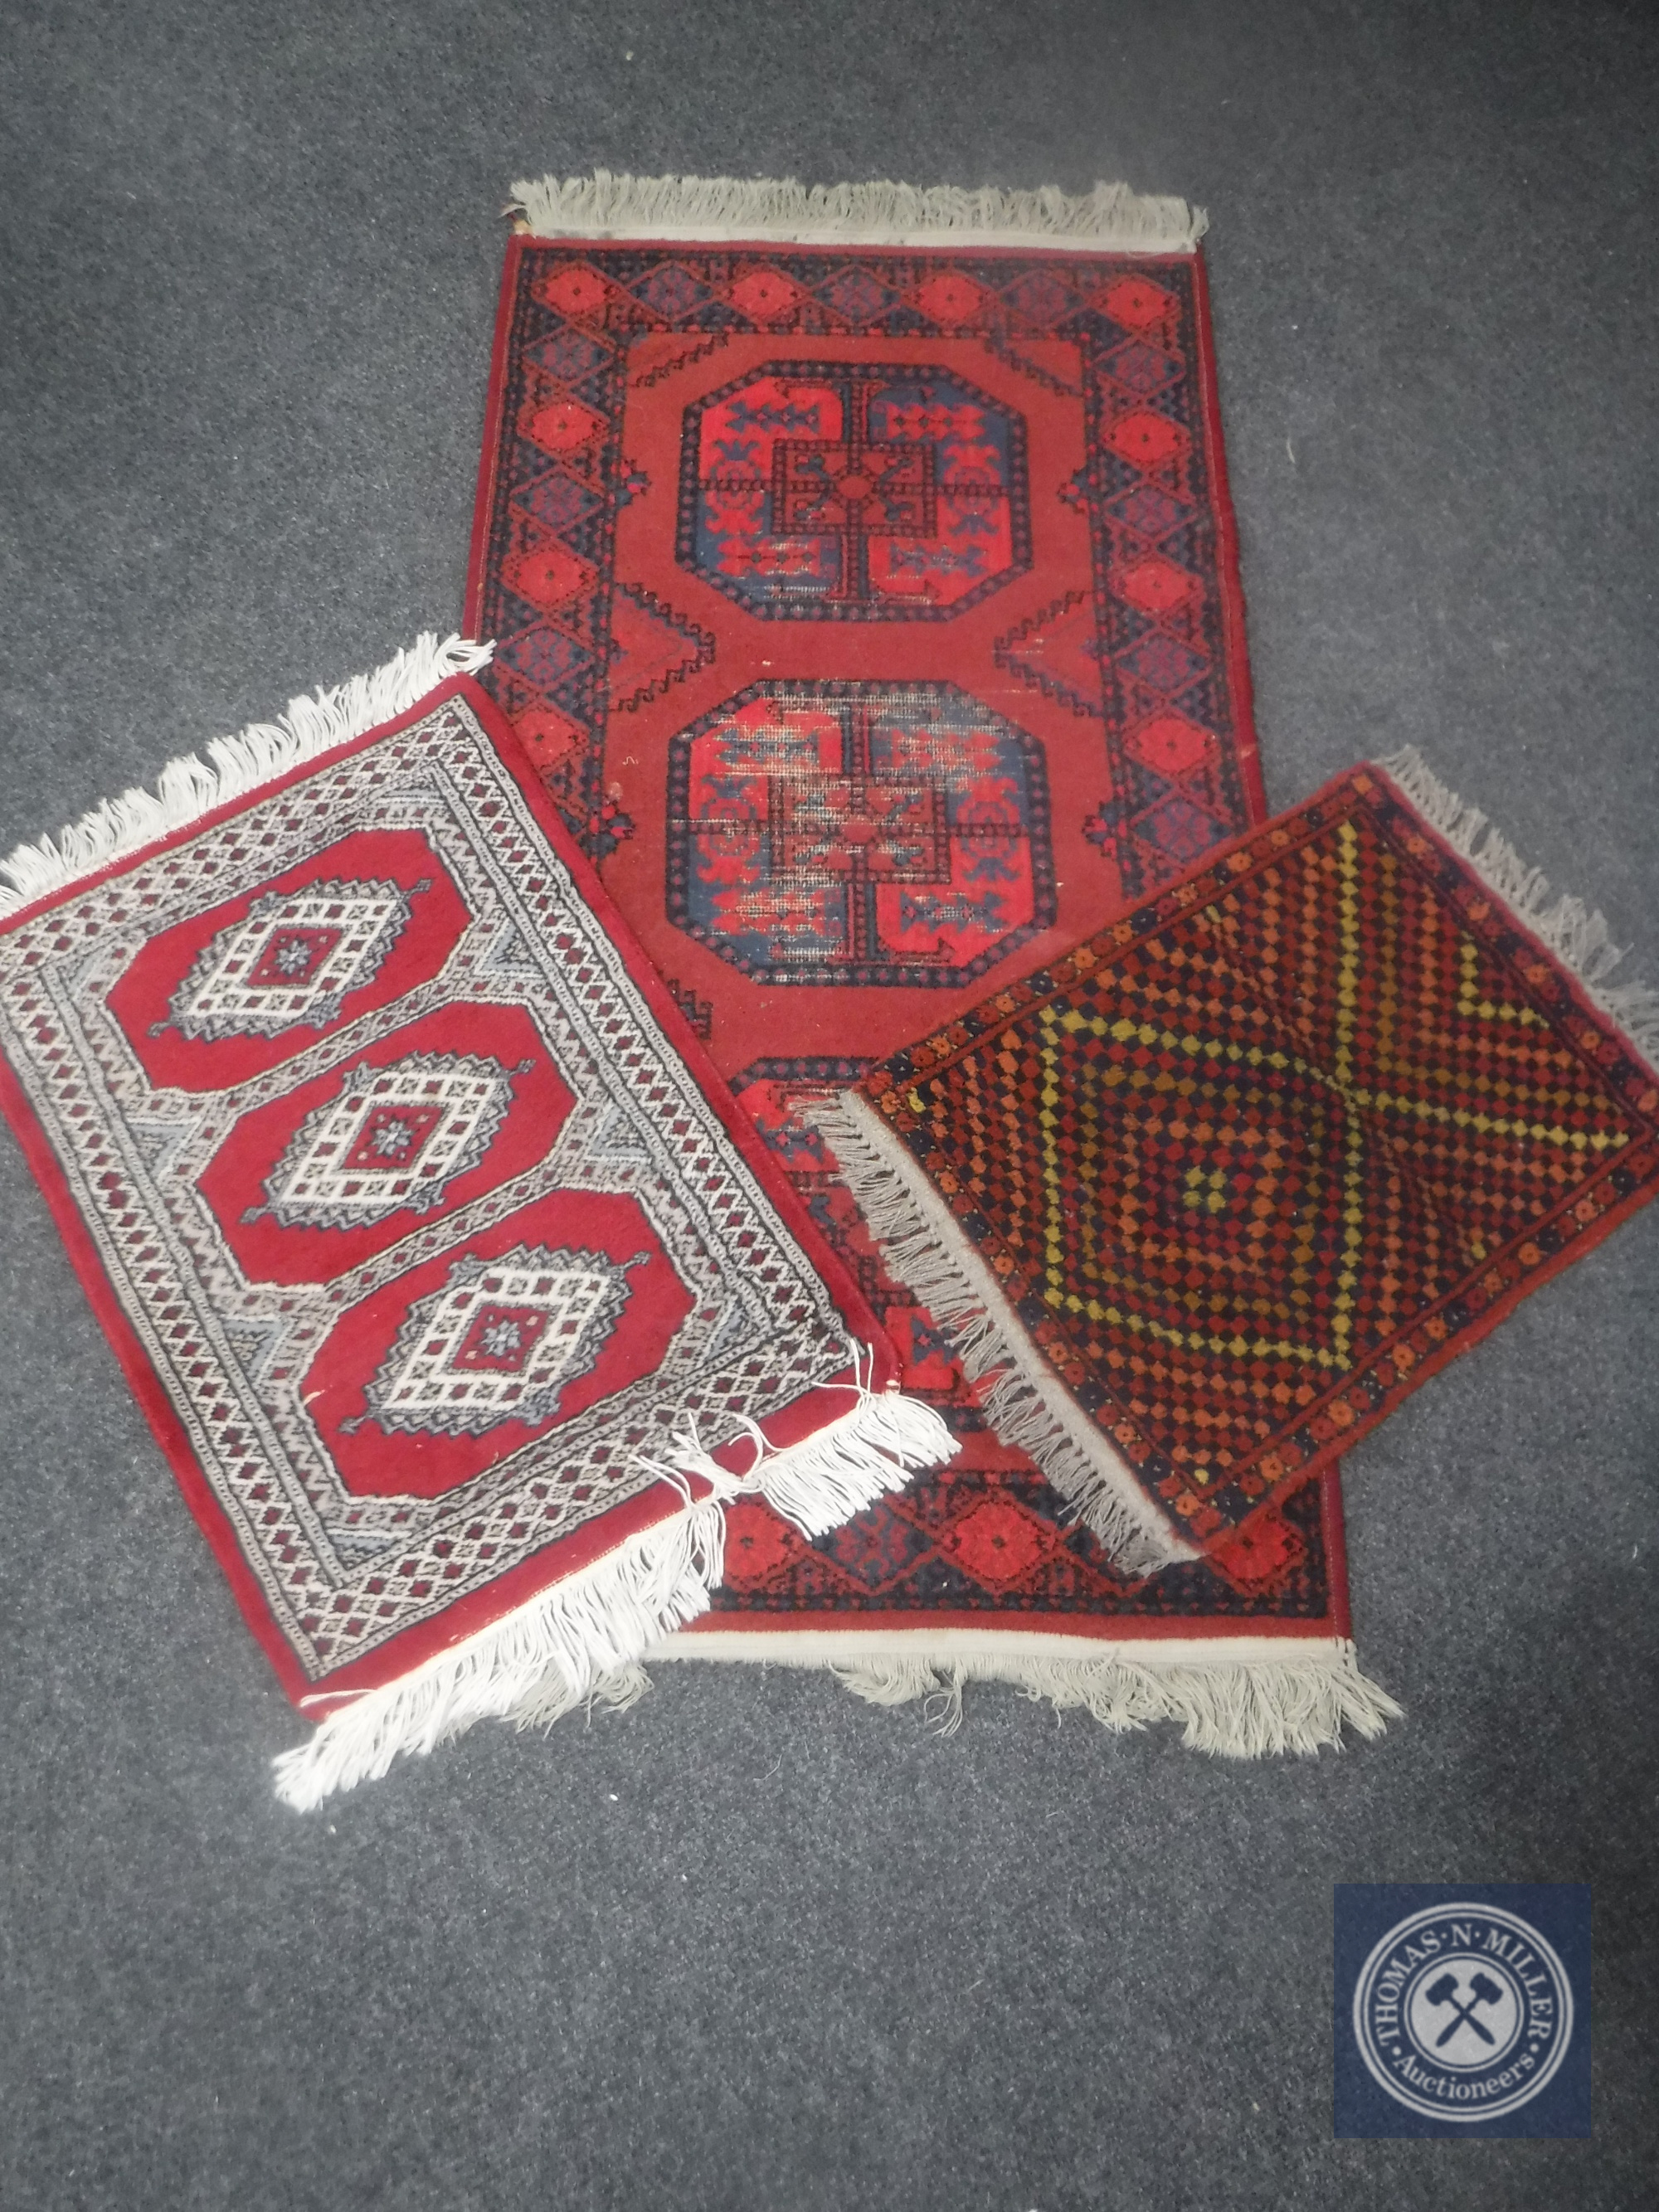 Three Eastern rugs